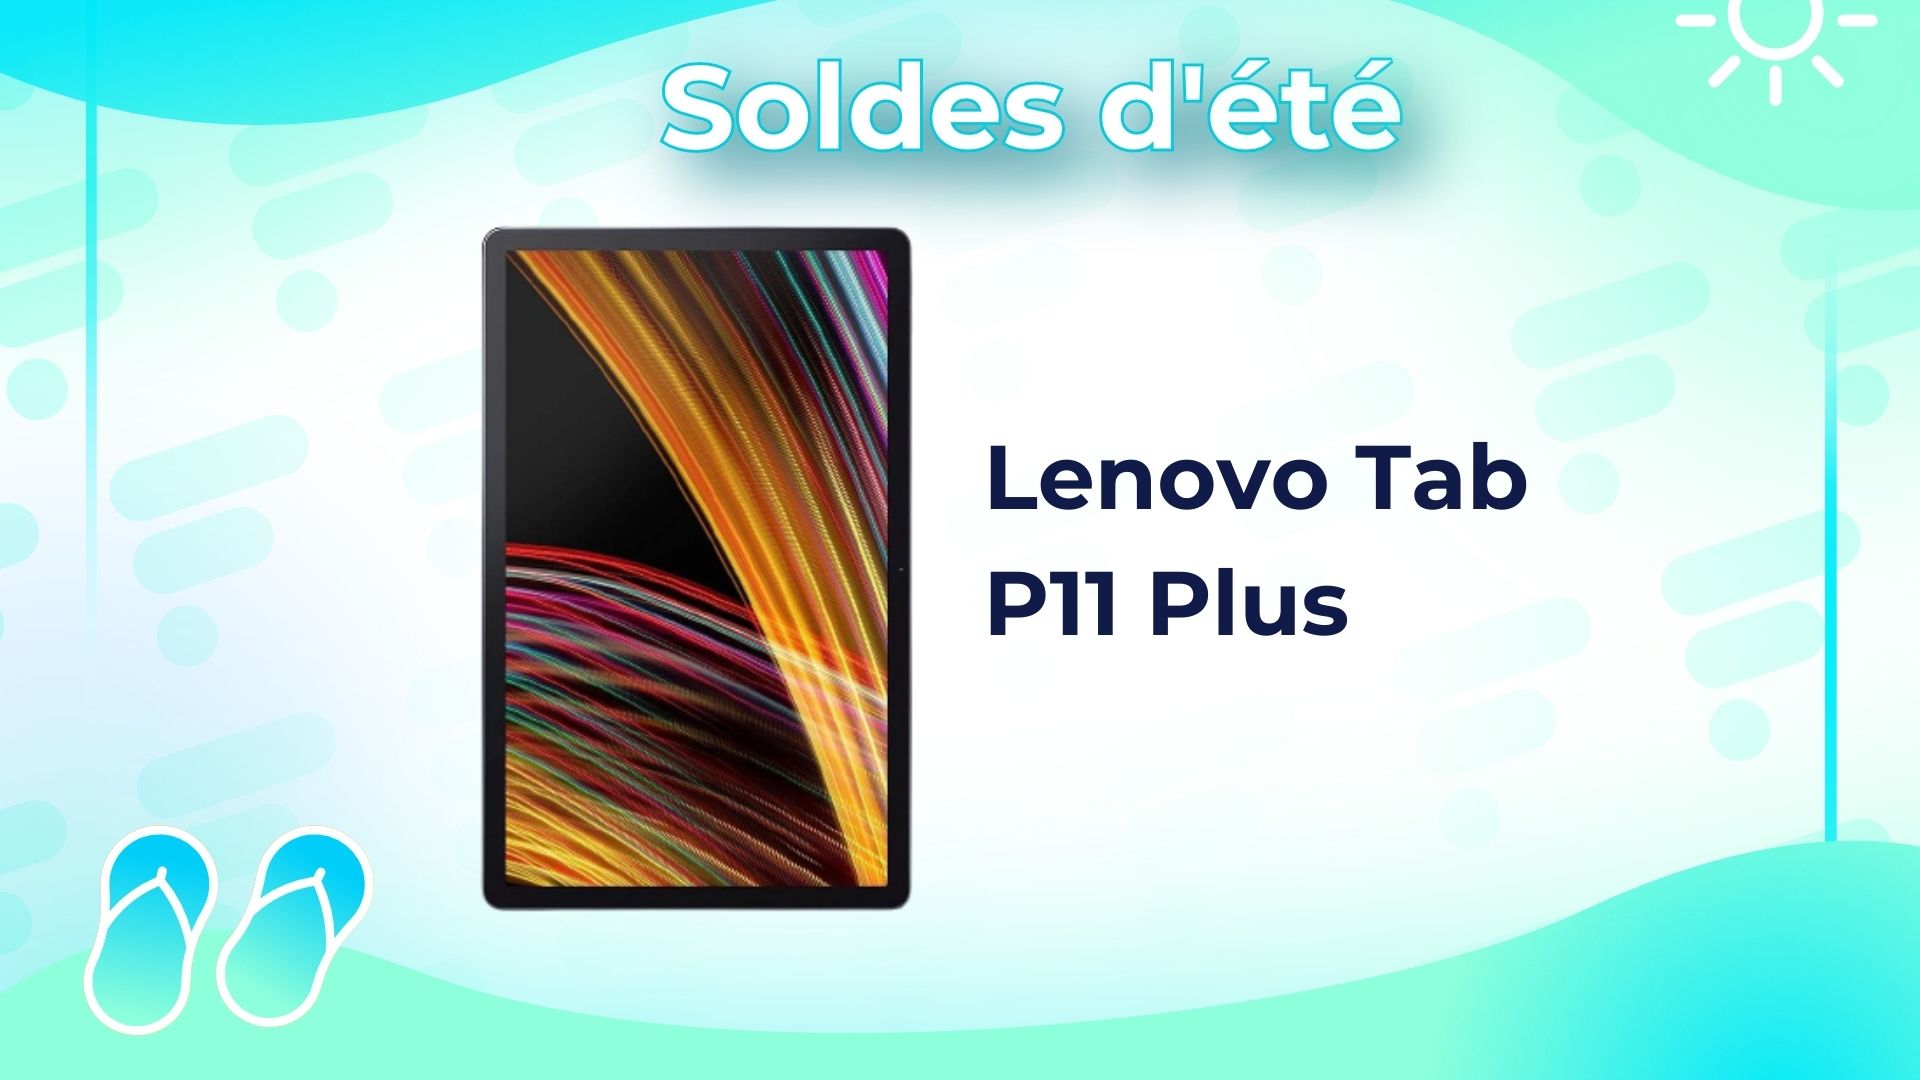 Seulement 139 €, c'est le prix de la tablette familiale de Lenovo pendant  les soldes